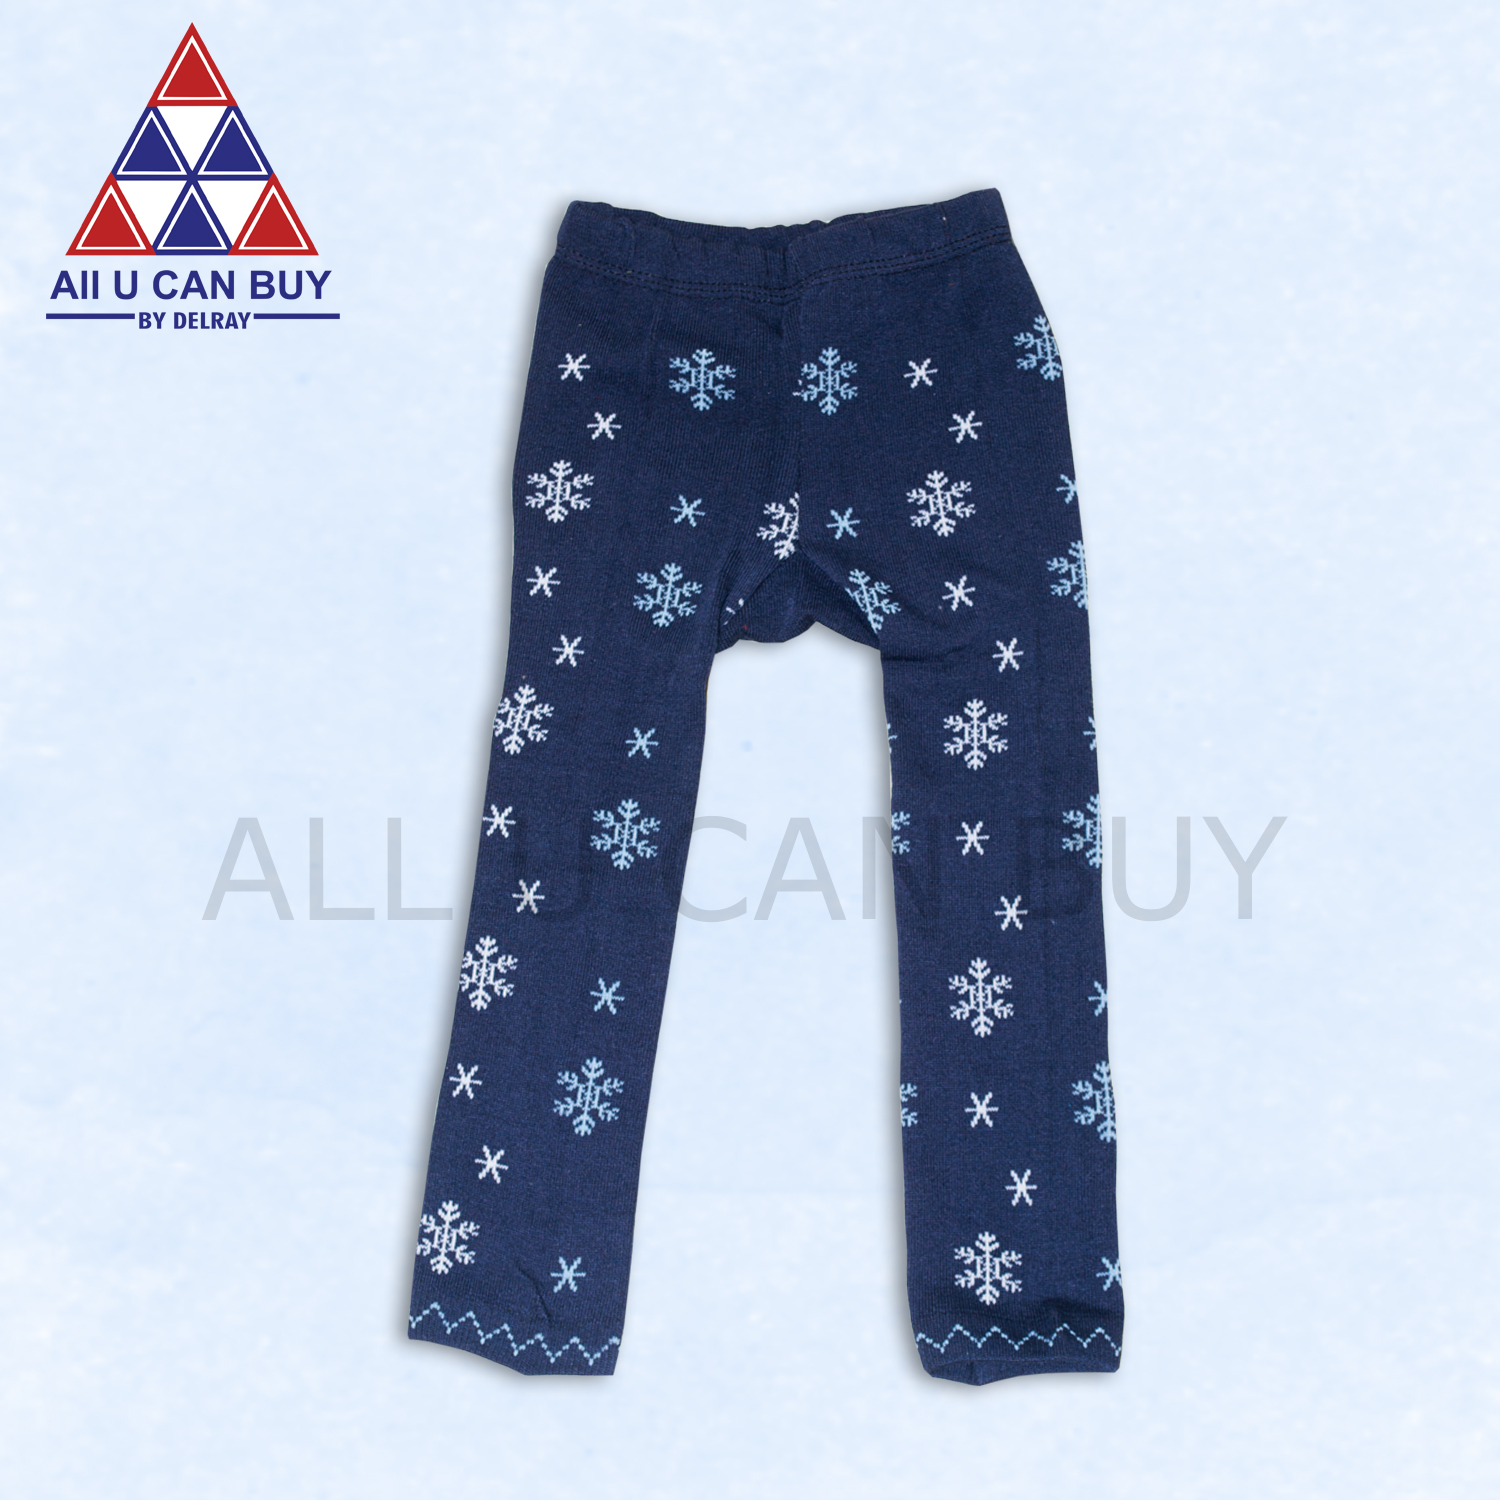 ALL U CAN BUY กางเกงสำหรับเด็ก เสื้อผ้าสำหรับเด็ก กางเกงเลกกิ้งเด็ก กางเกงเด็กสีน้ำเงิน กางเกงเด็กสีกรมท่า กางเกงเด็กลายเกล็ดหิมะ กางเกงเด็กเล็ก กางเกงยืด กางเกงยืดสำหรับเด็ก กางเกงขายาวเด็ก